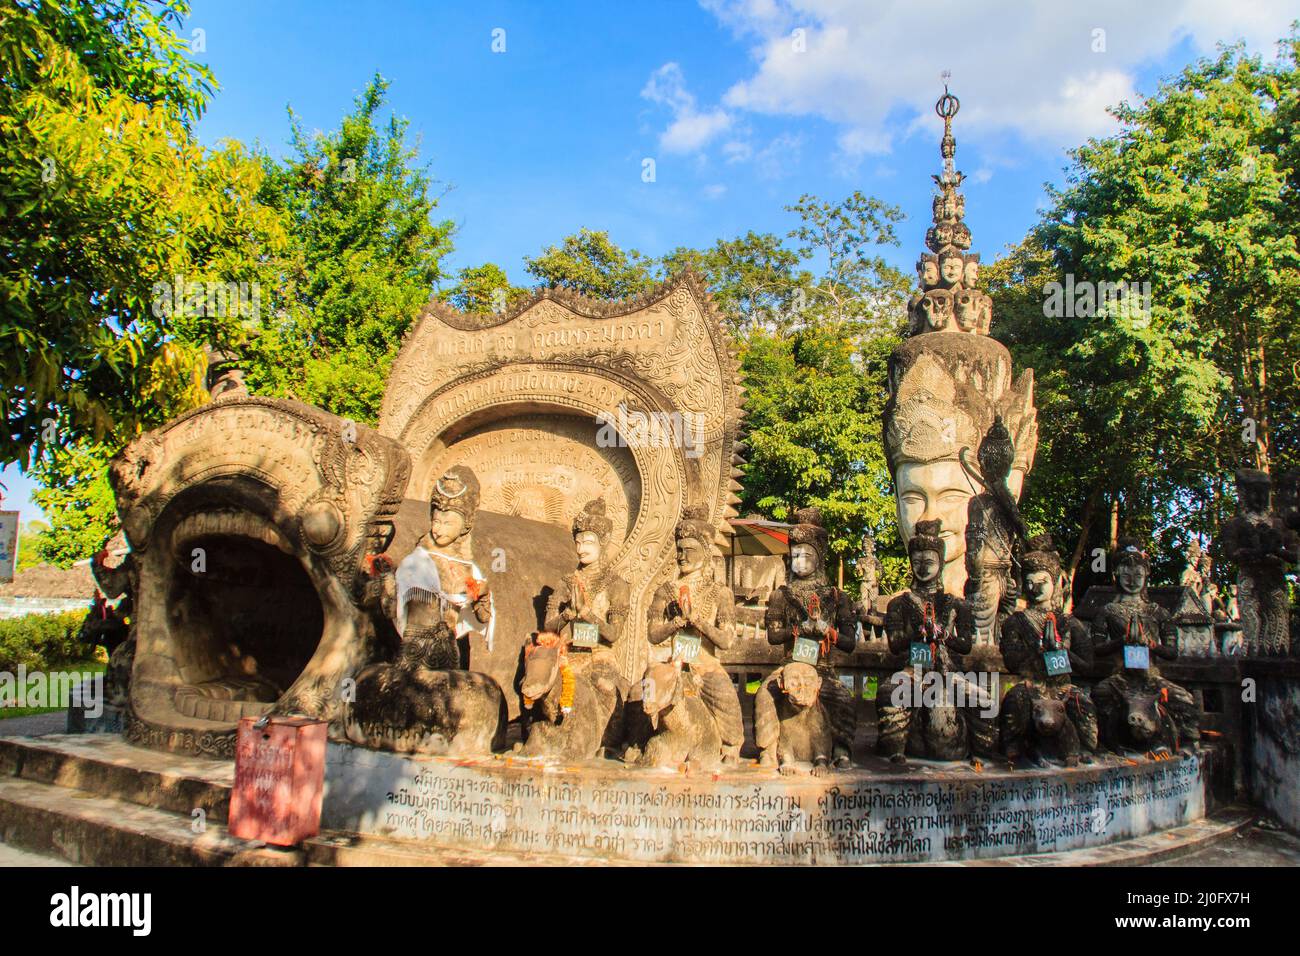 Grotte destinée de la vie: Naissance, vieillissement, maladie et mort à Sala Keoku, le parc de sculptures géantes fantastiques en béton inspiré b Banque D'Images